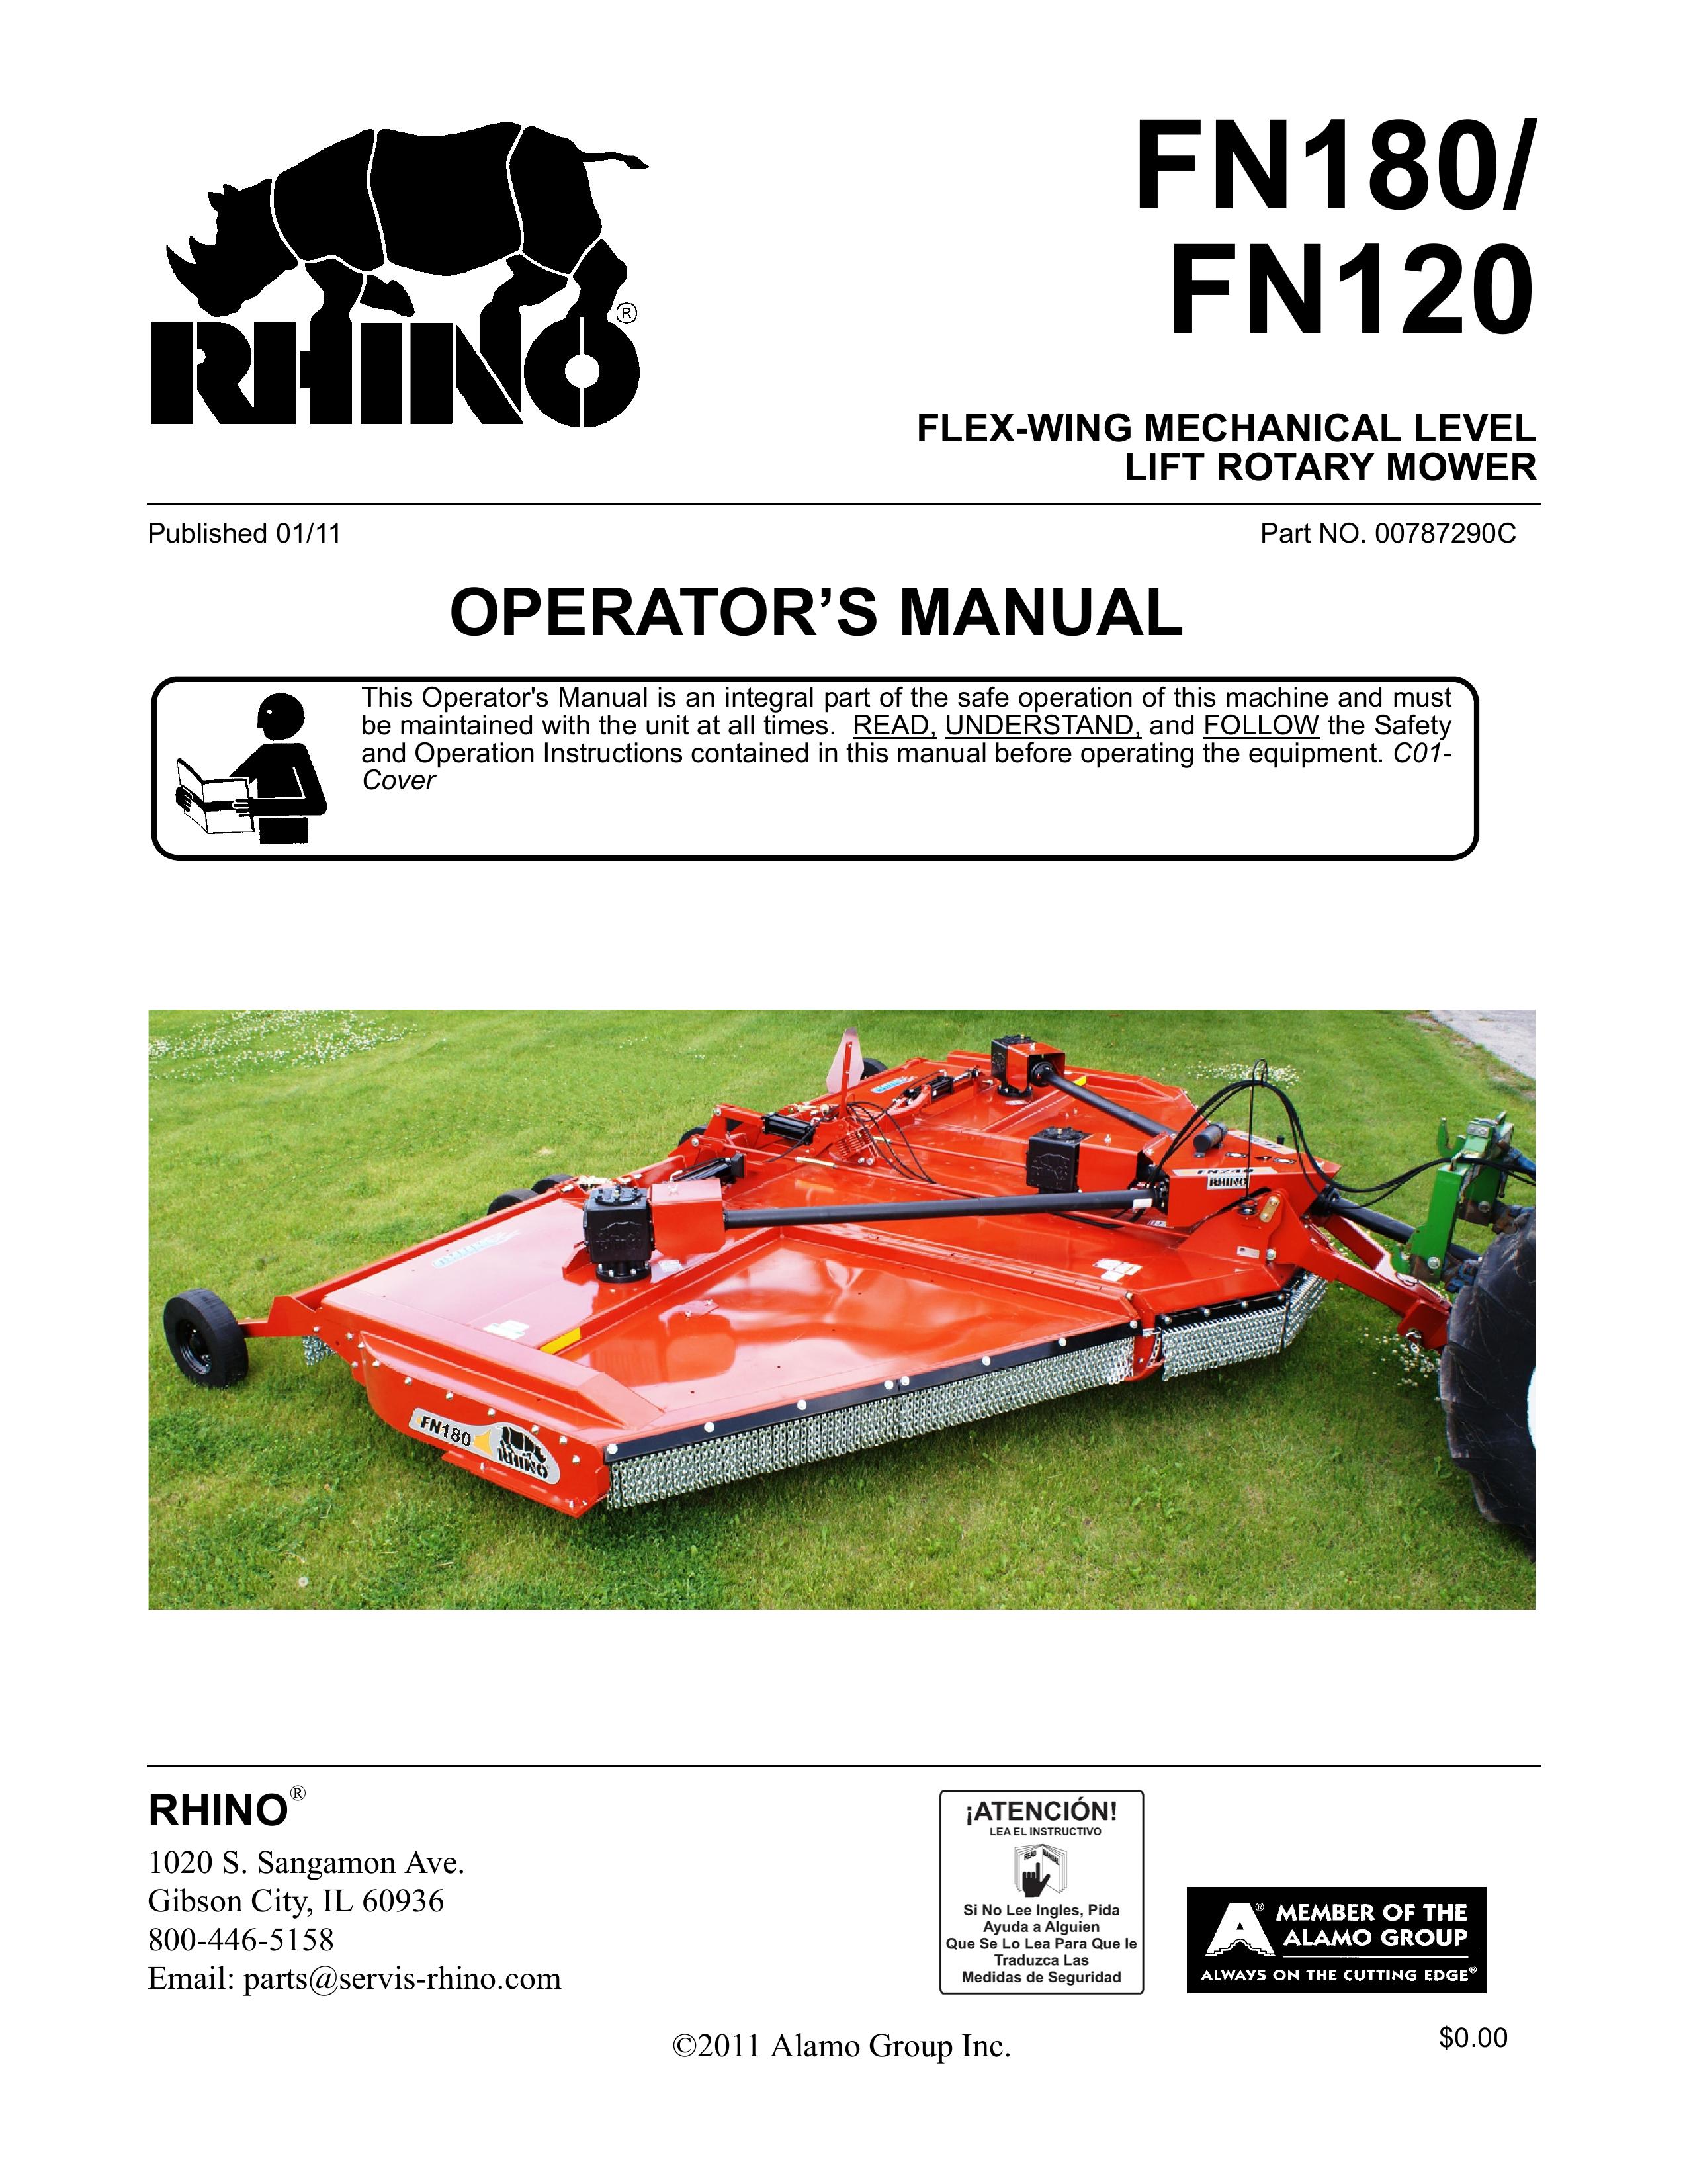 Rhino Mounts FN180 Lawn Mower User Manual